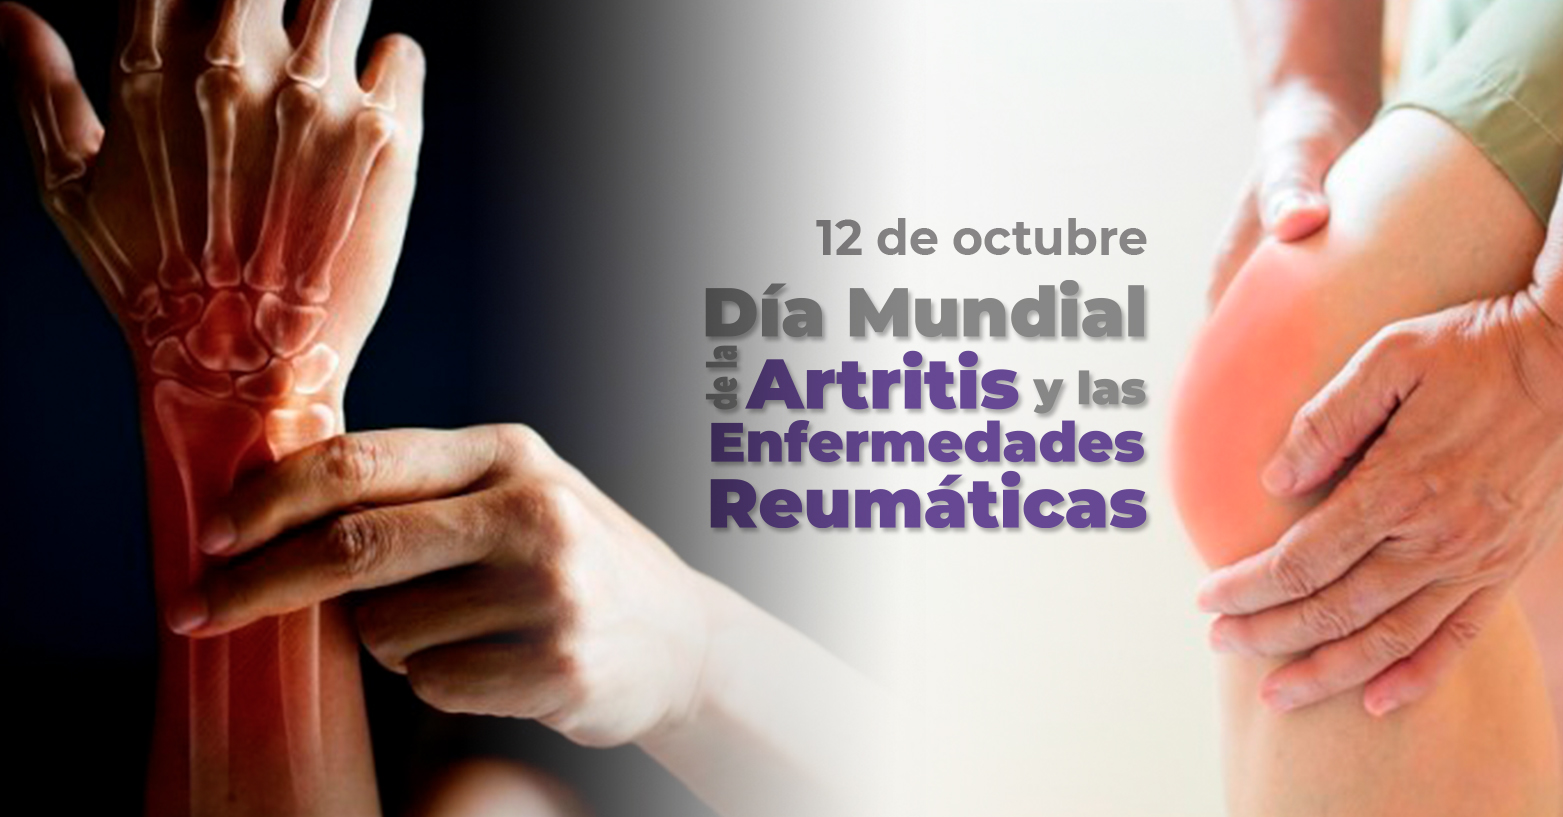 Día Mundial de la Artritis y las Enfermedades Reumáticas | 12 de octubre